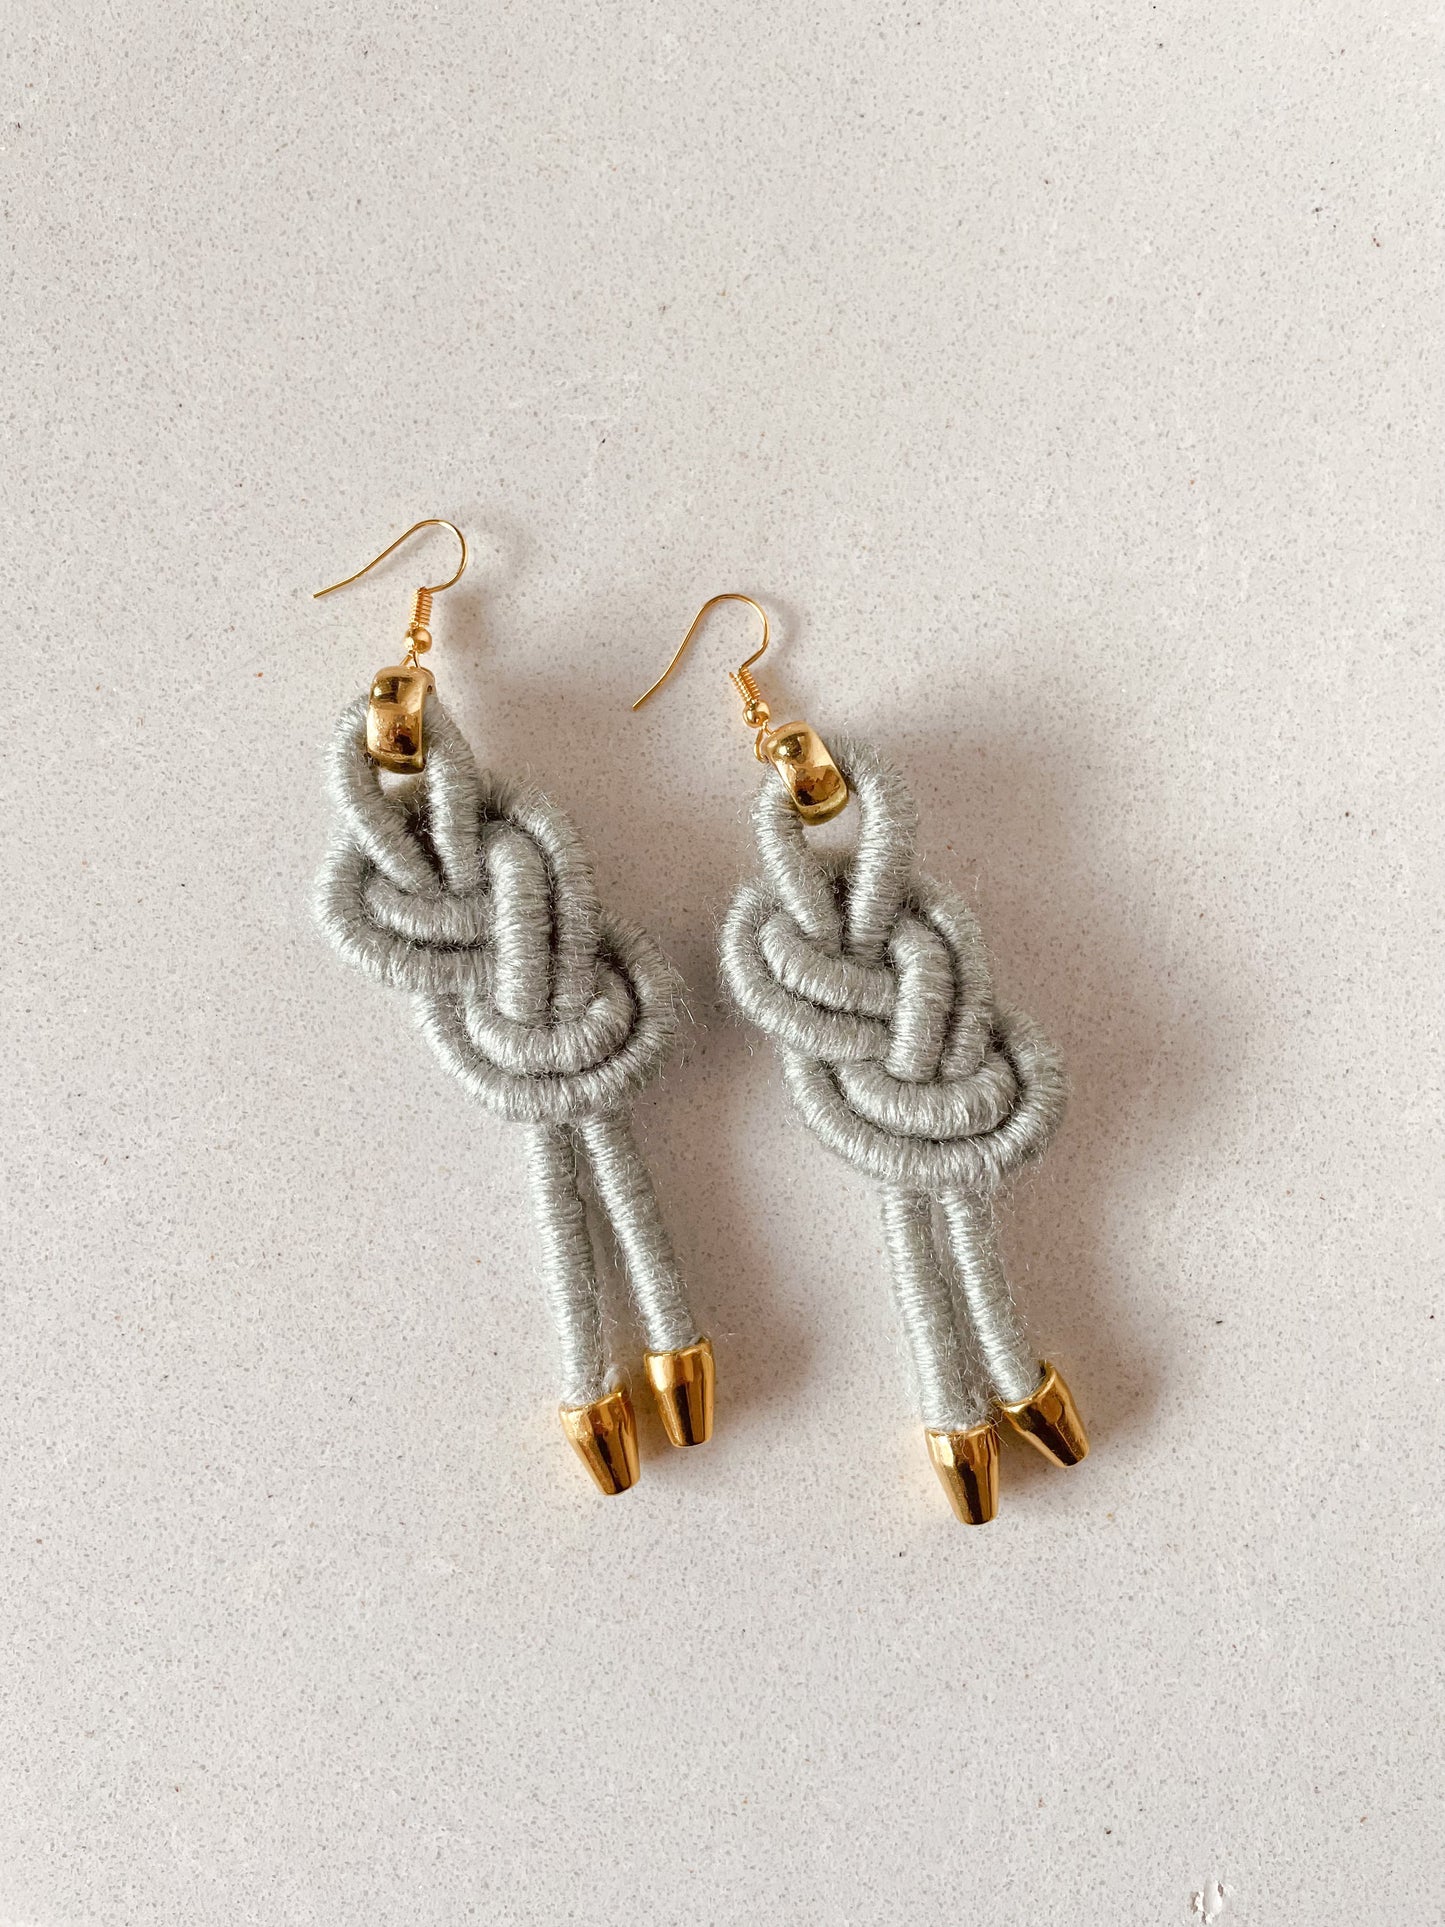 Figure eight knot earrings - knottinger.